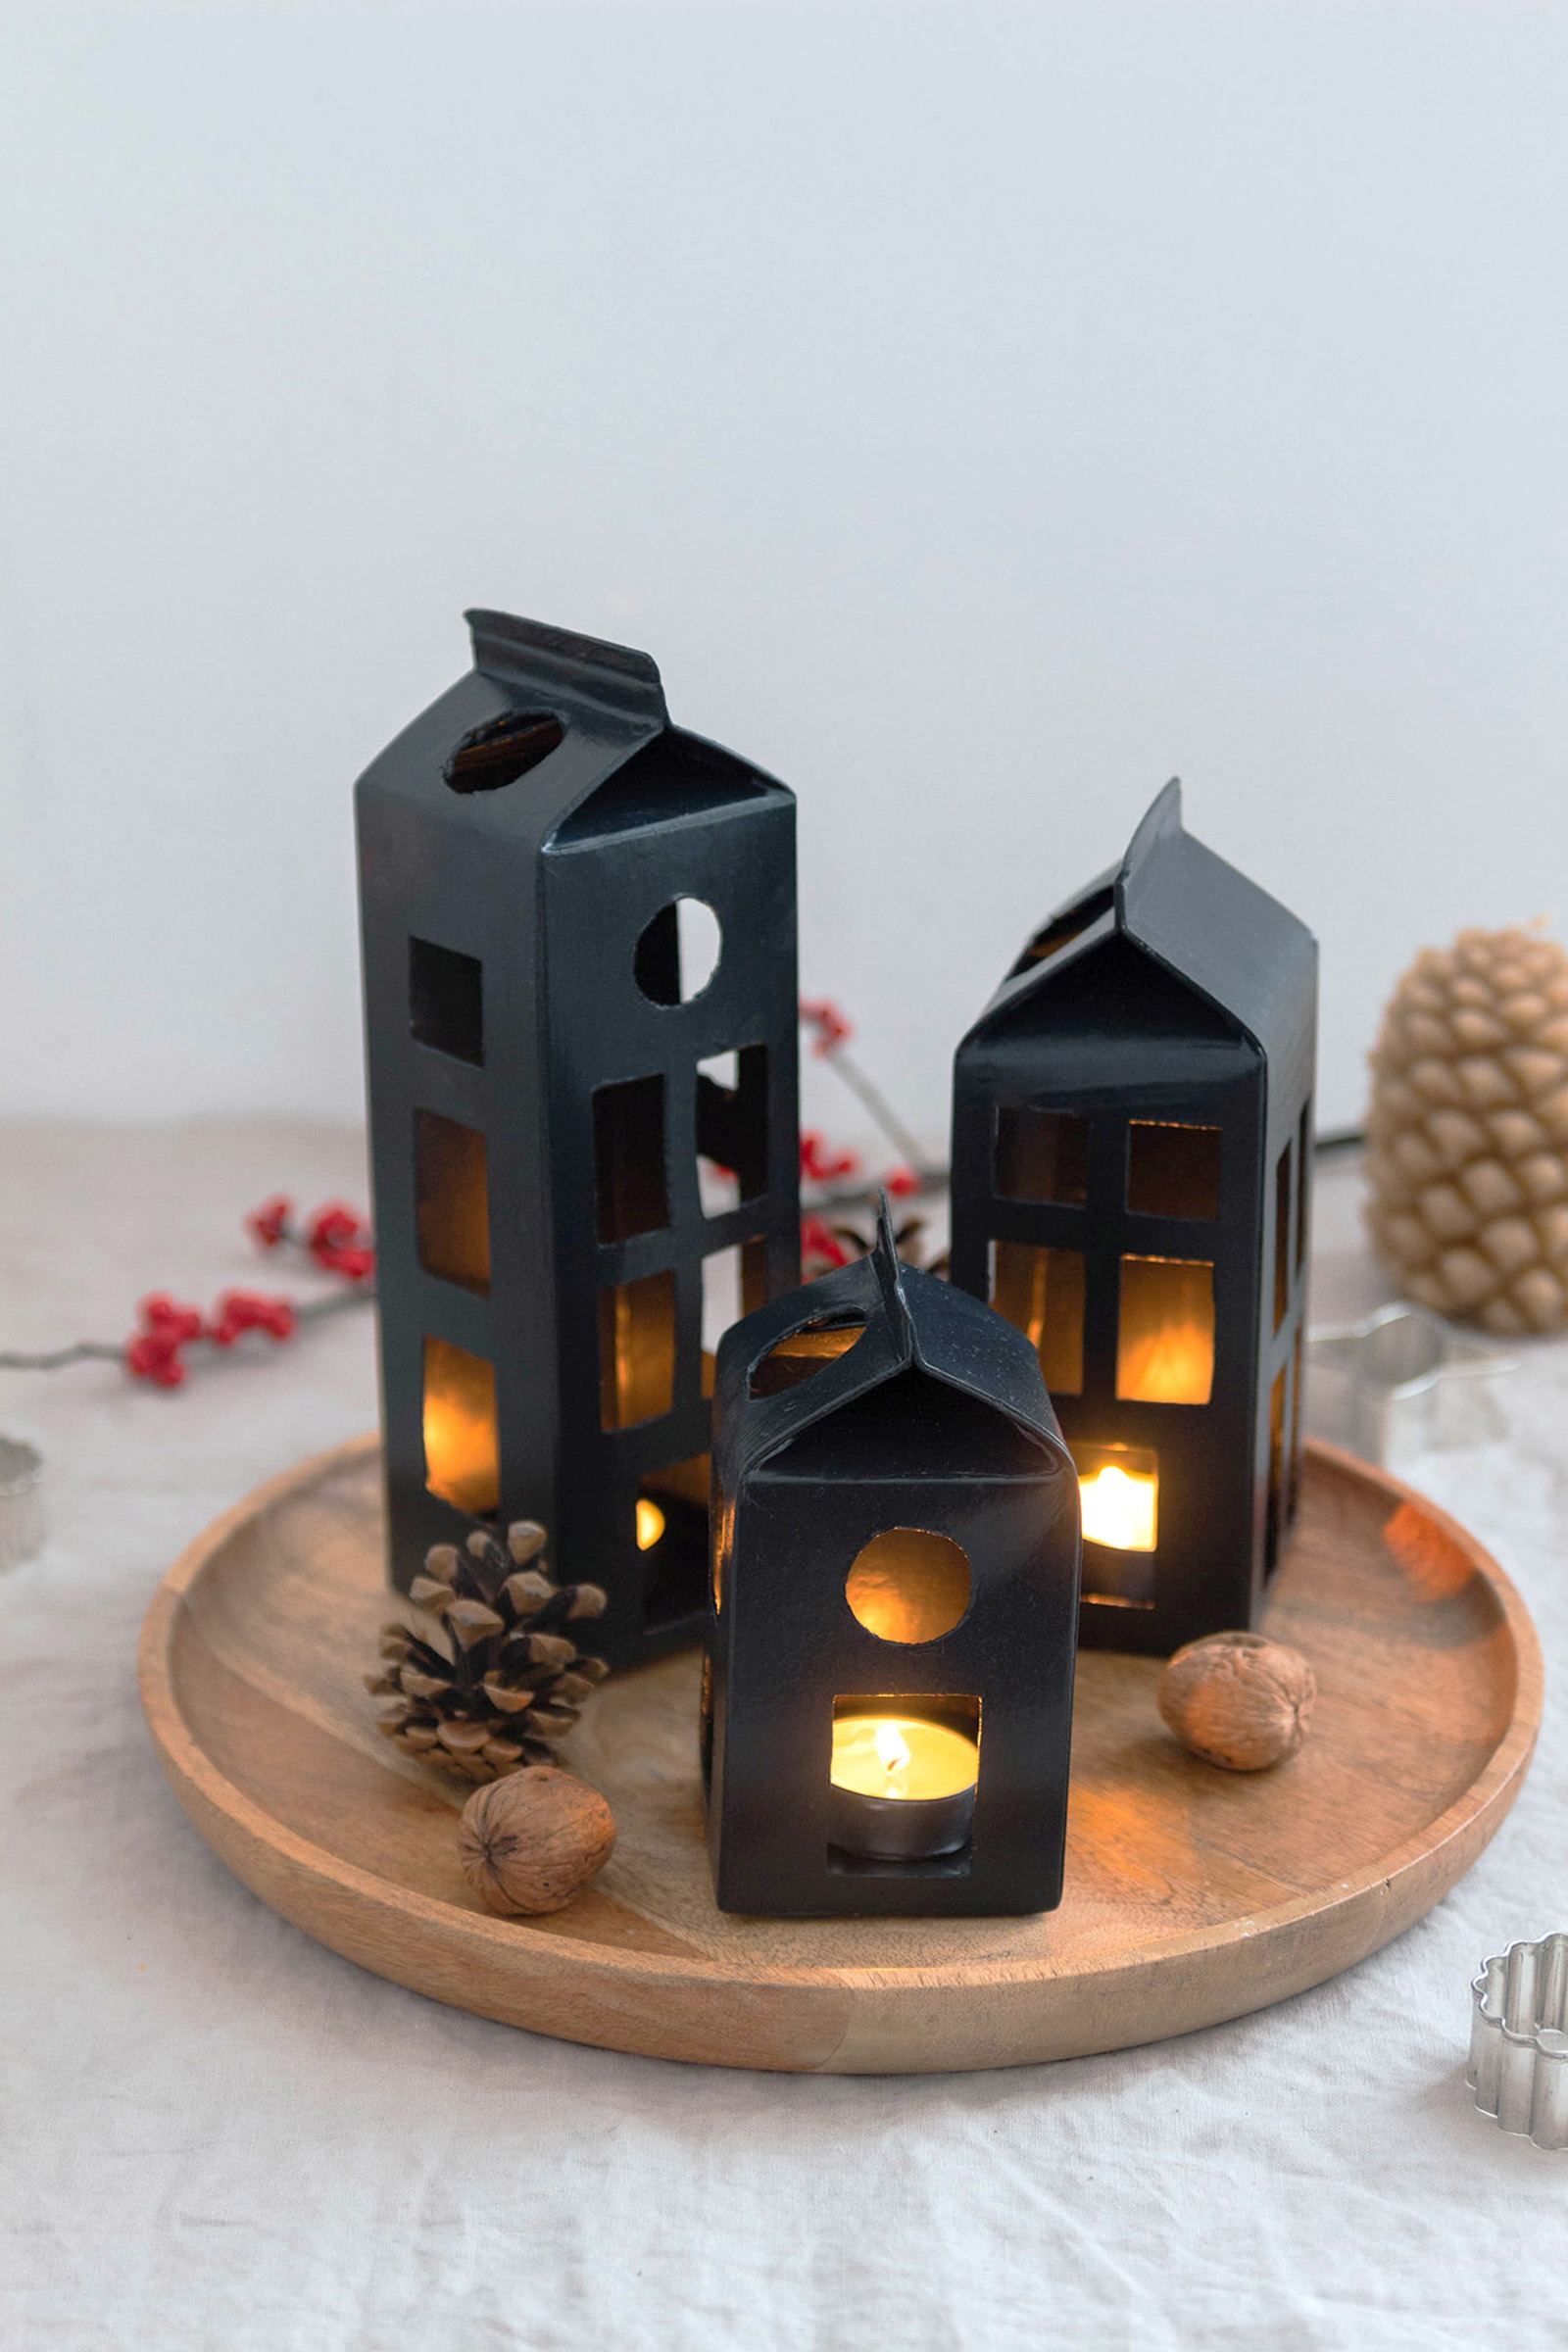 Alva & Ida - DIY Blog, Nachhaltigkeit, Slow Living, Natur - Hyggelige Weihnachten mit DIY Weihnachtsdeko: Lichthäuser aus Saftkartons